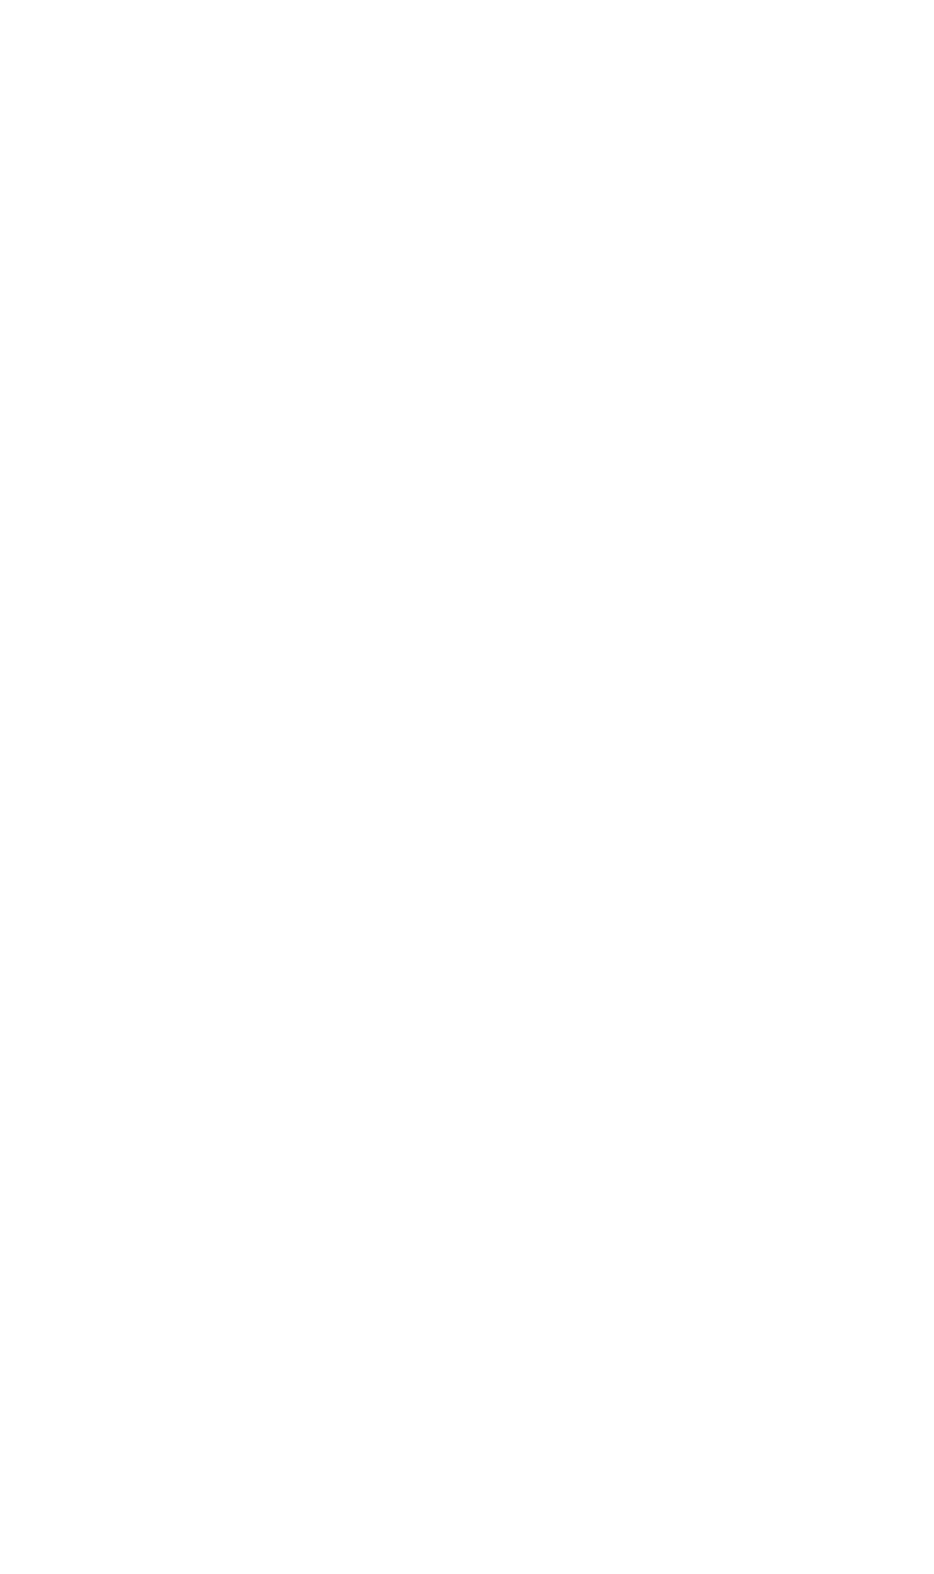 Grainger plc logo large for dark backgrounds (transparent PNG)